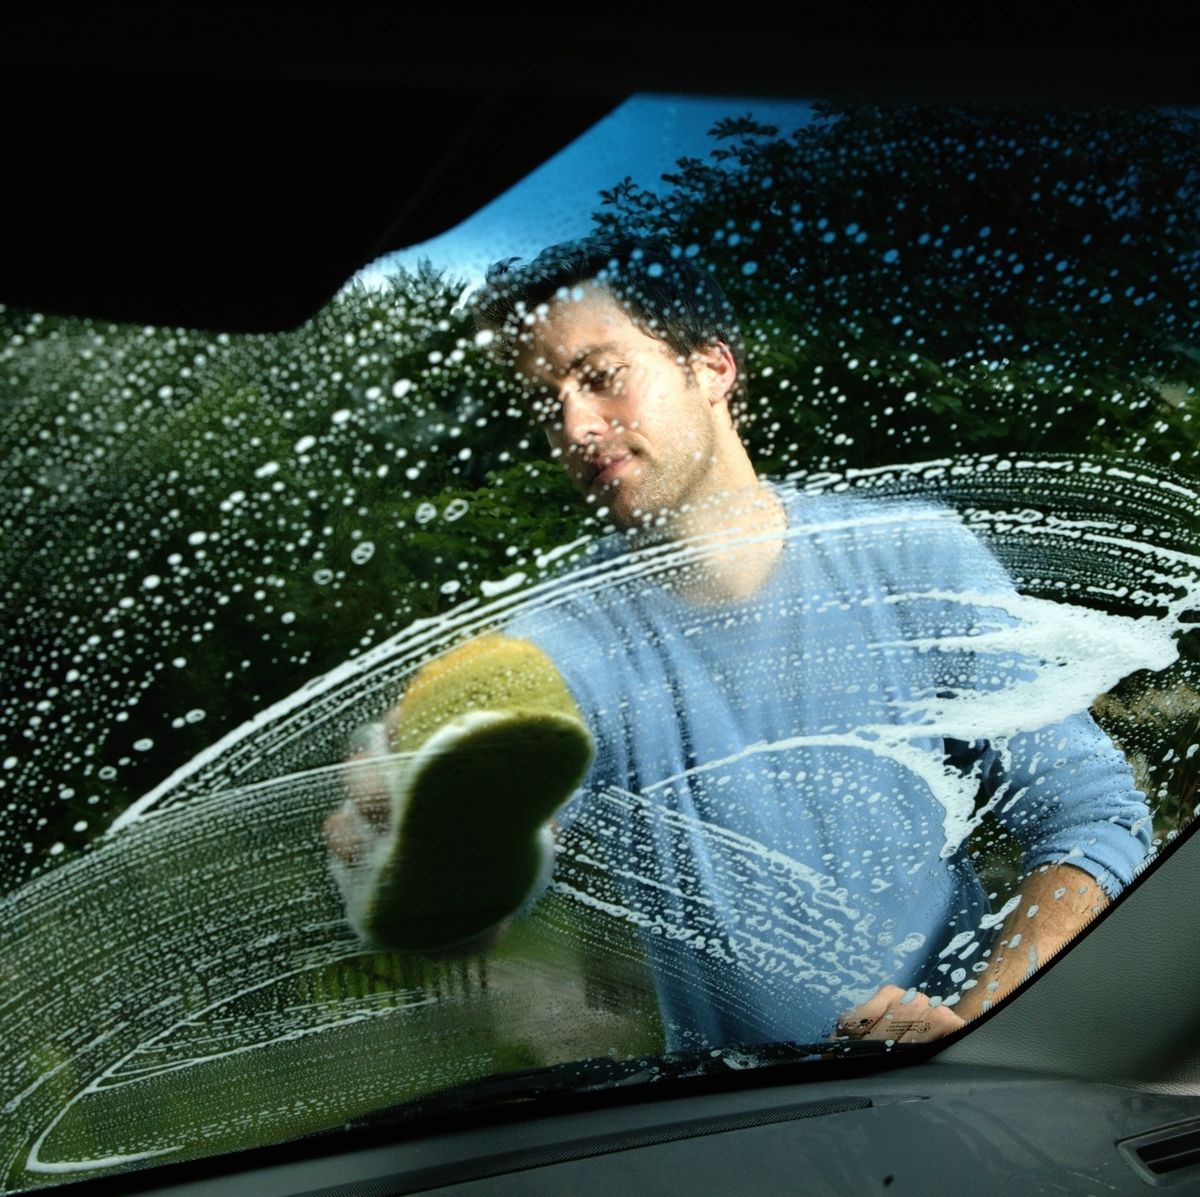 LIMPIEZA  Cómo hacer mejor la limpieza del interior de tu coche